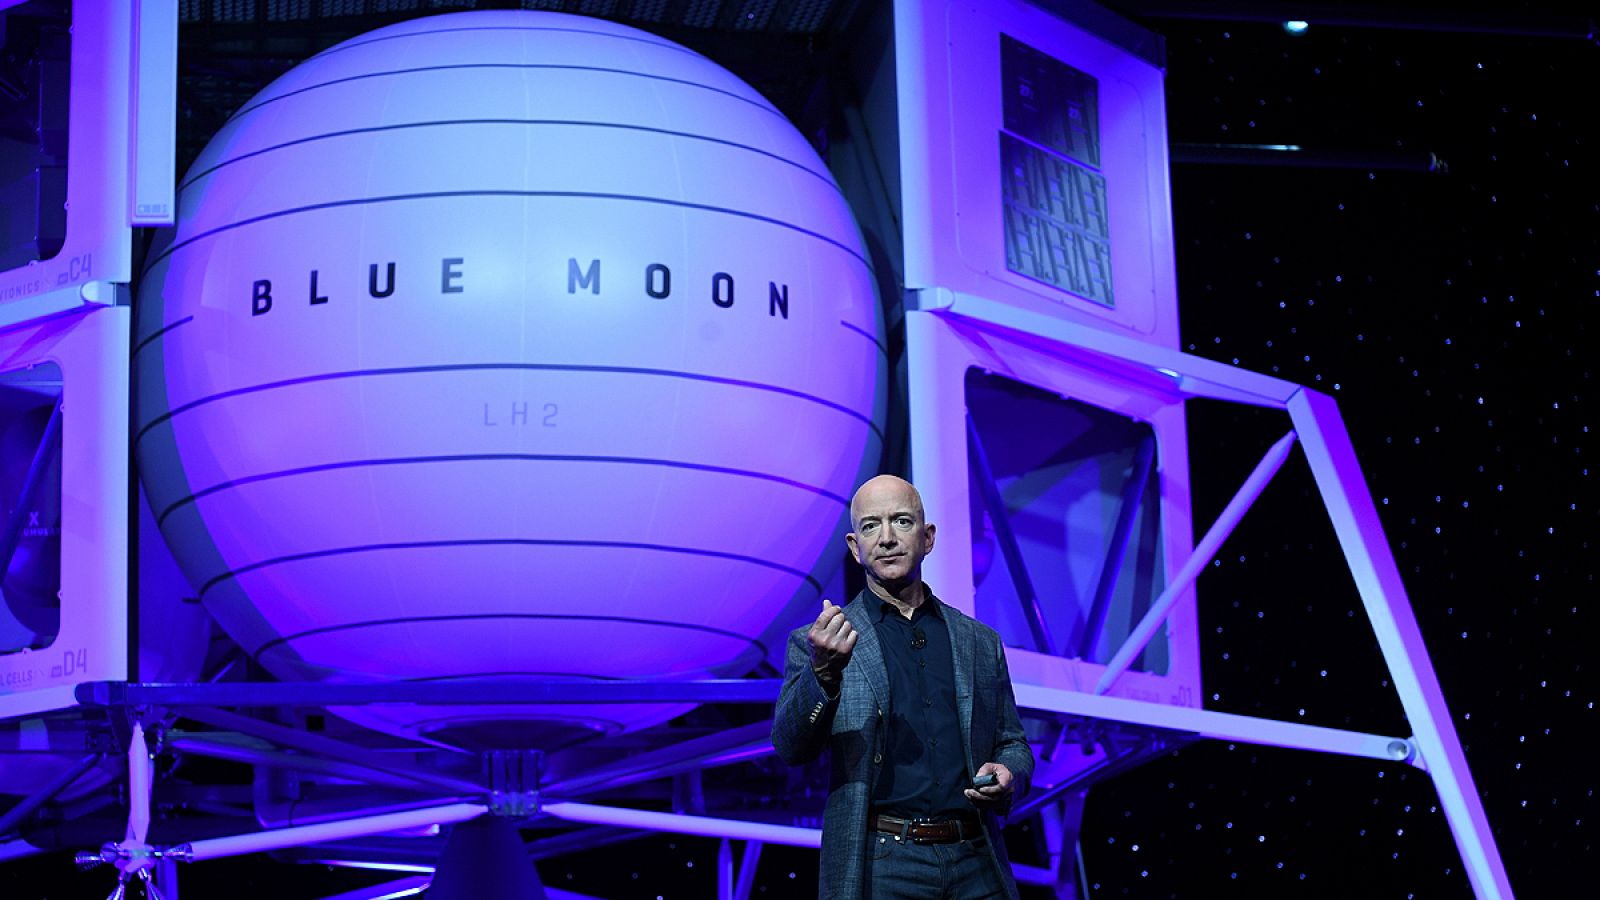 El dueño de Amazon presenta un modelo de nave para posarse en la Luna - RTVE.es